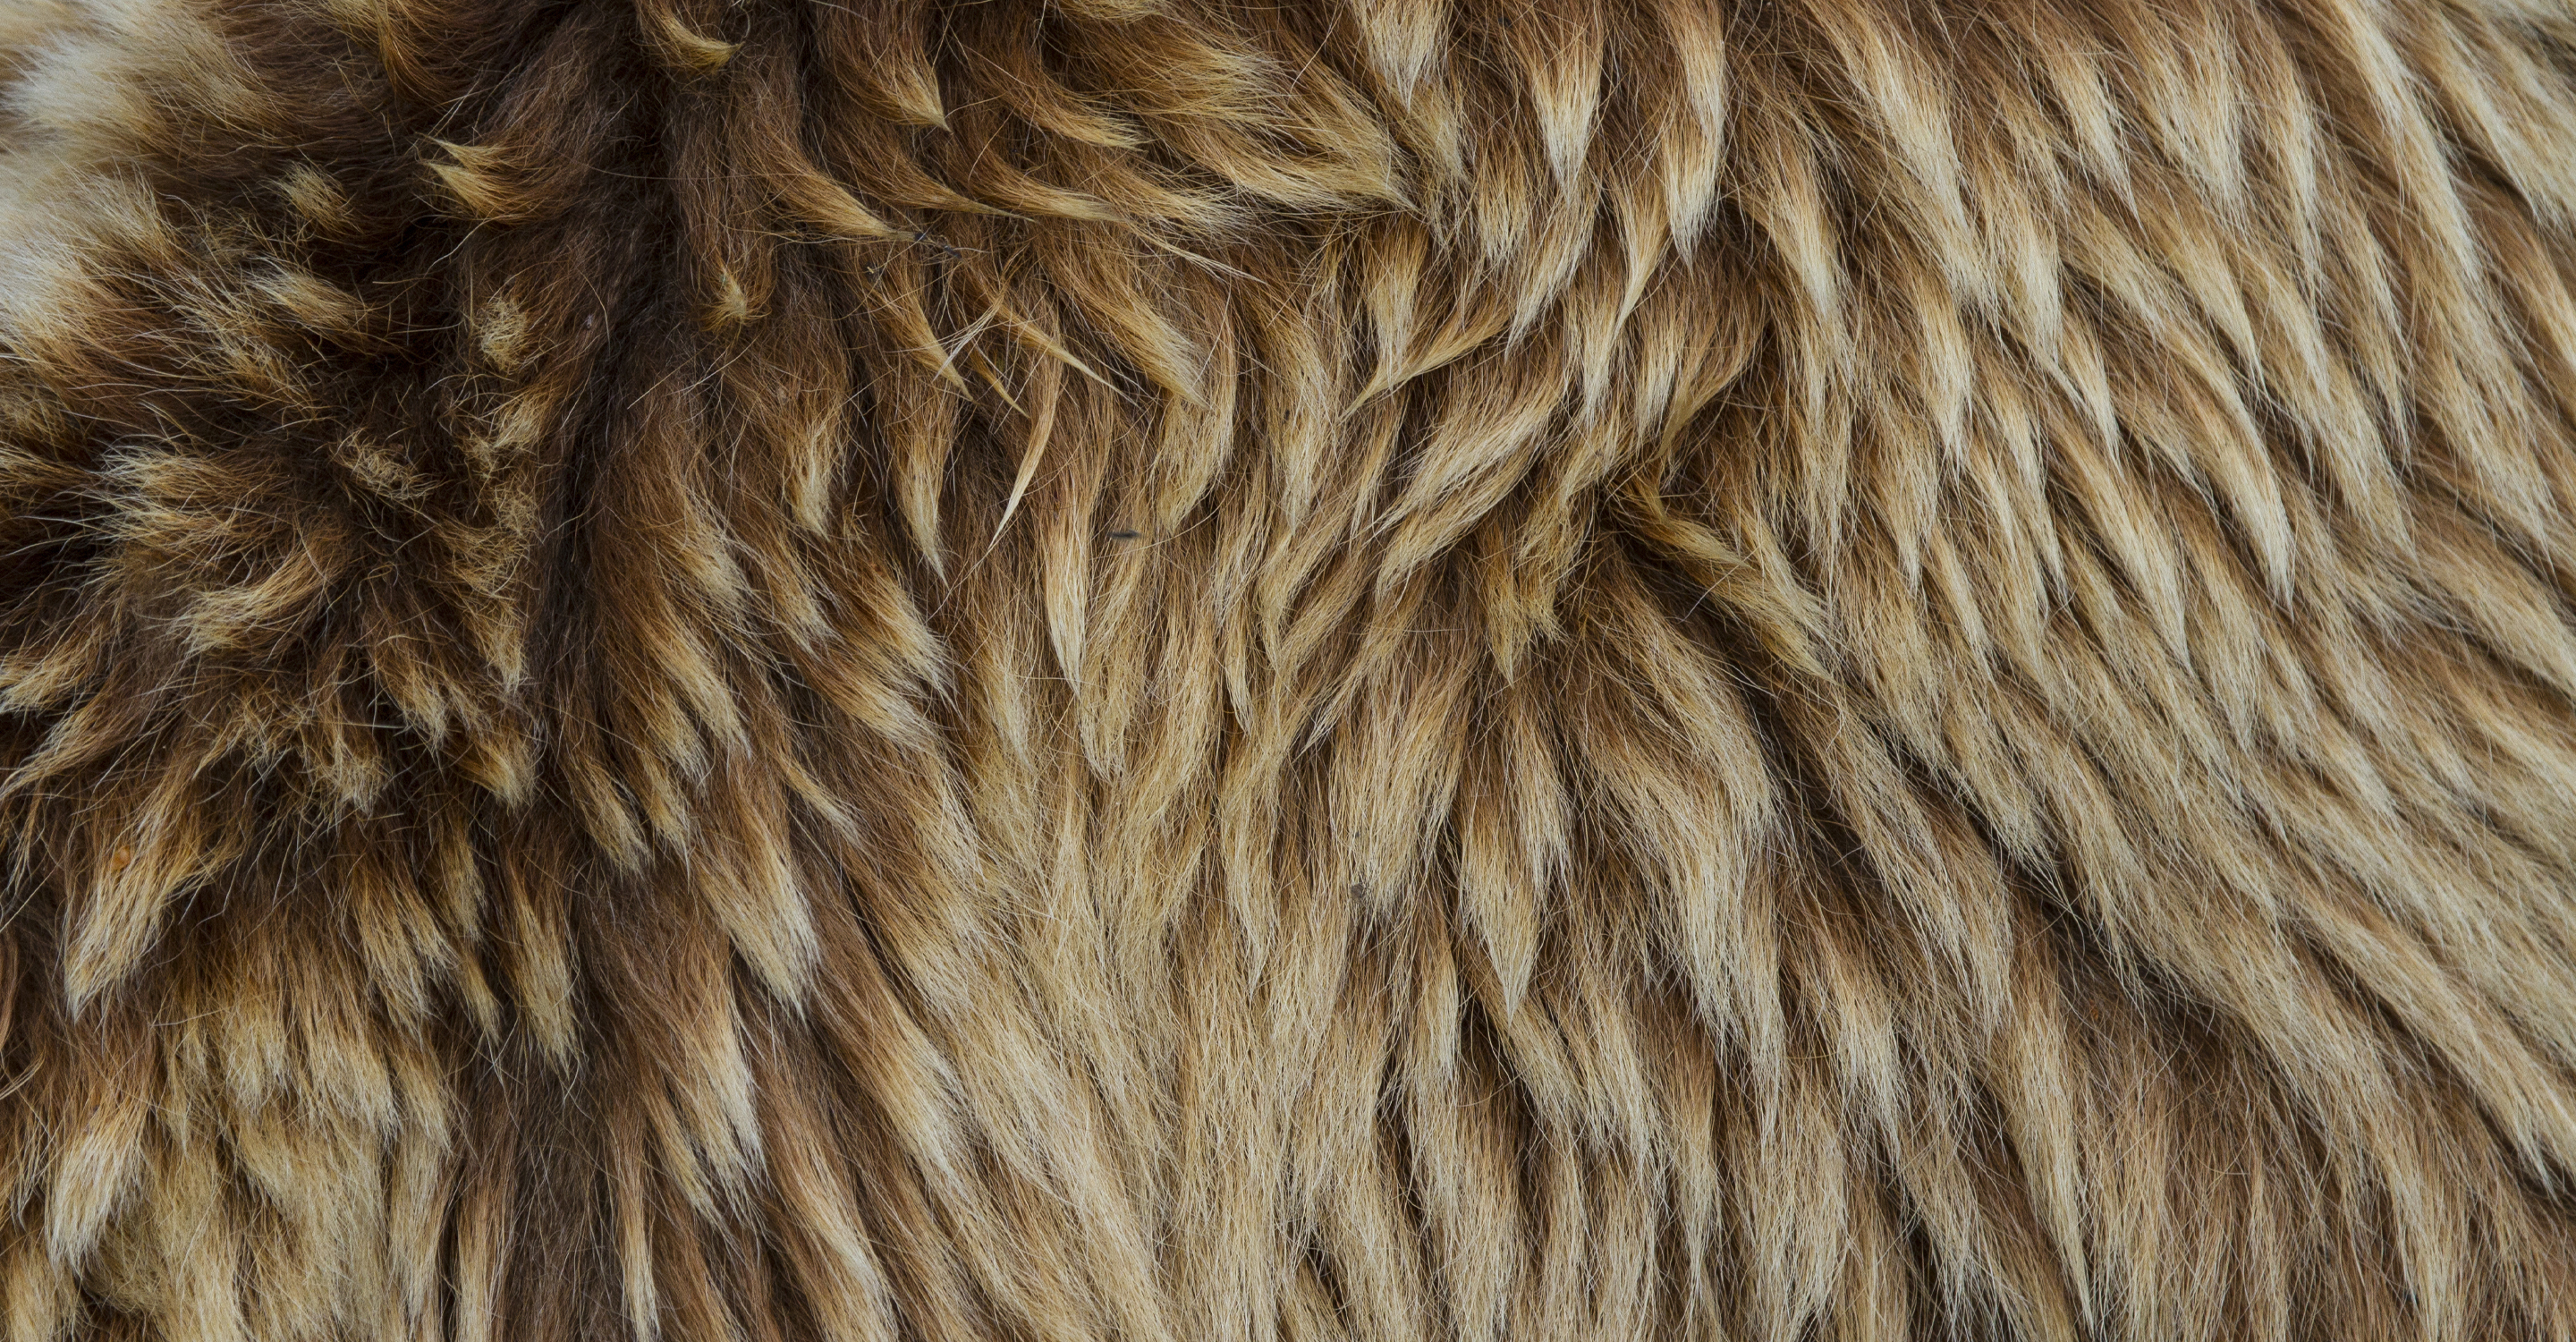 A close up of a brown bear's fur, Alaska, USA